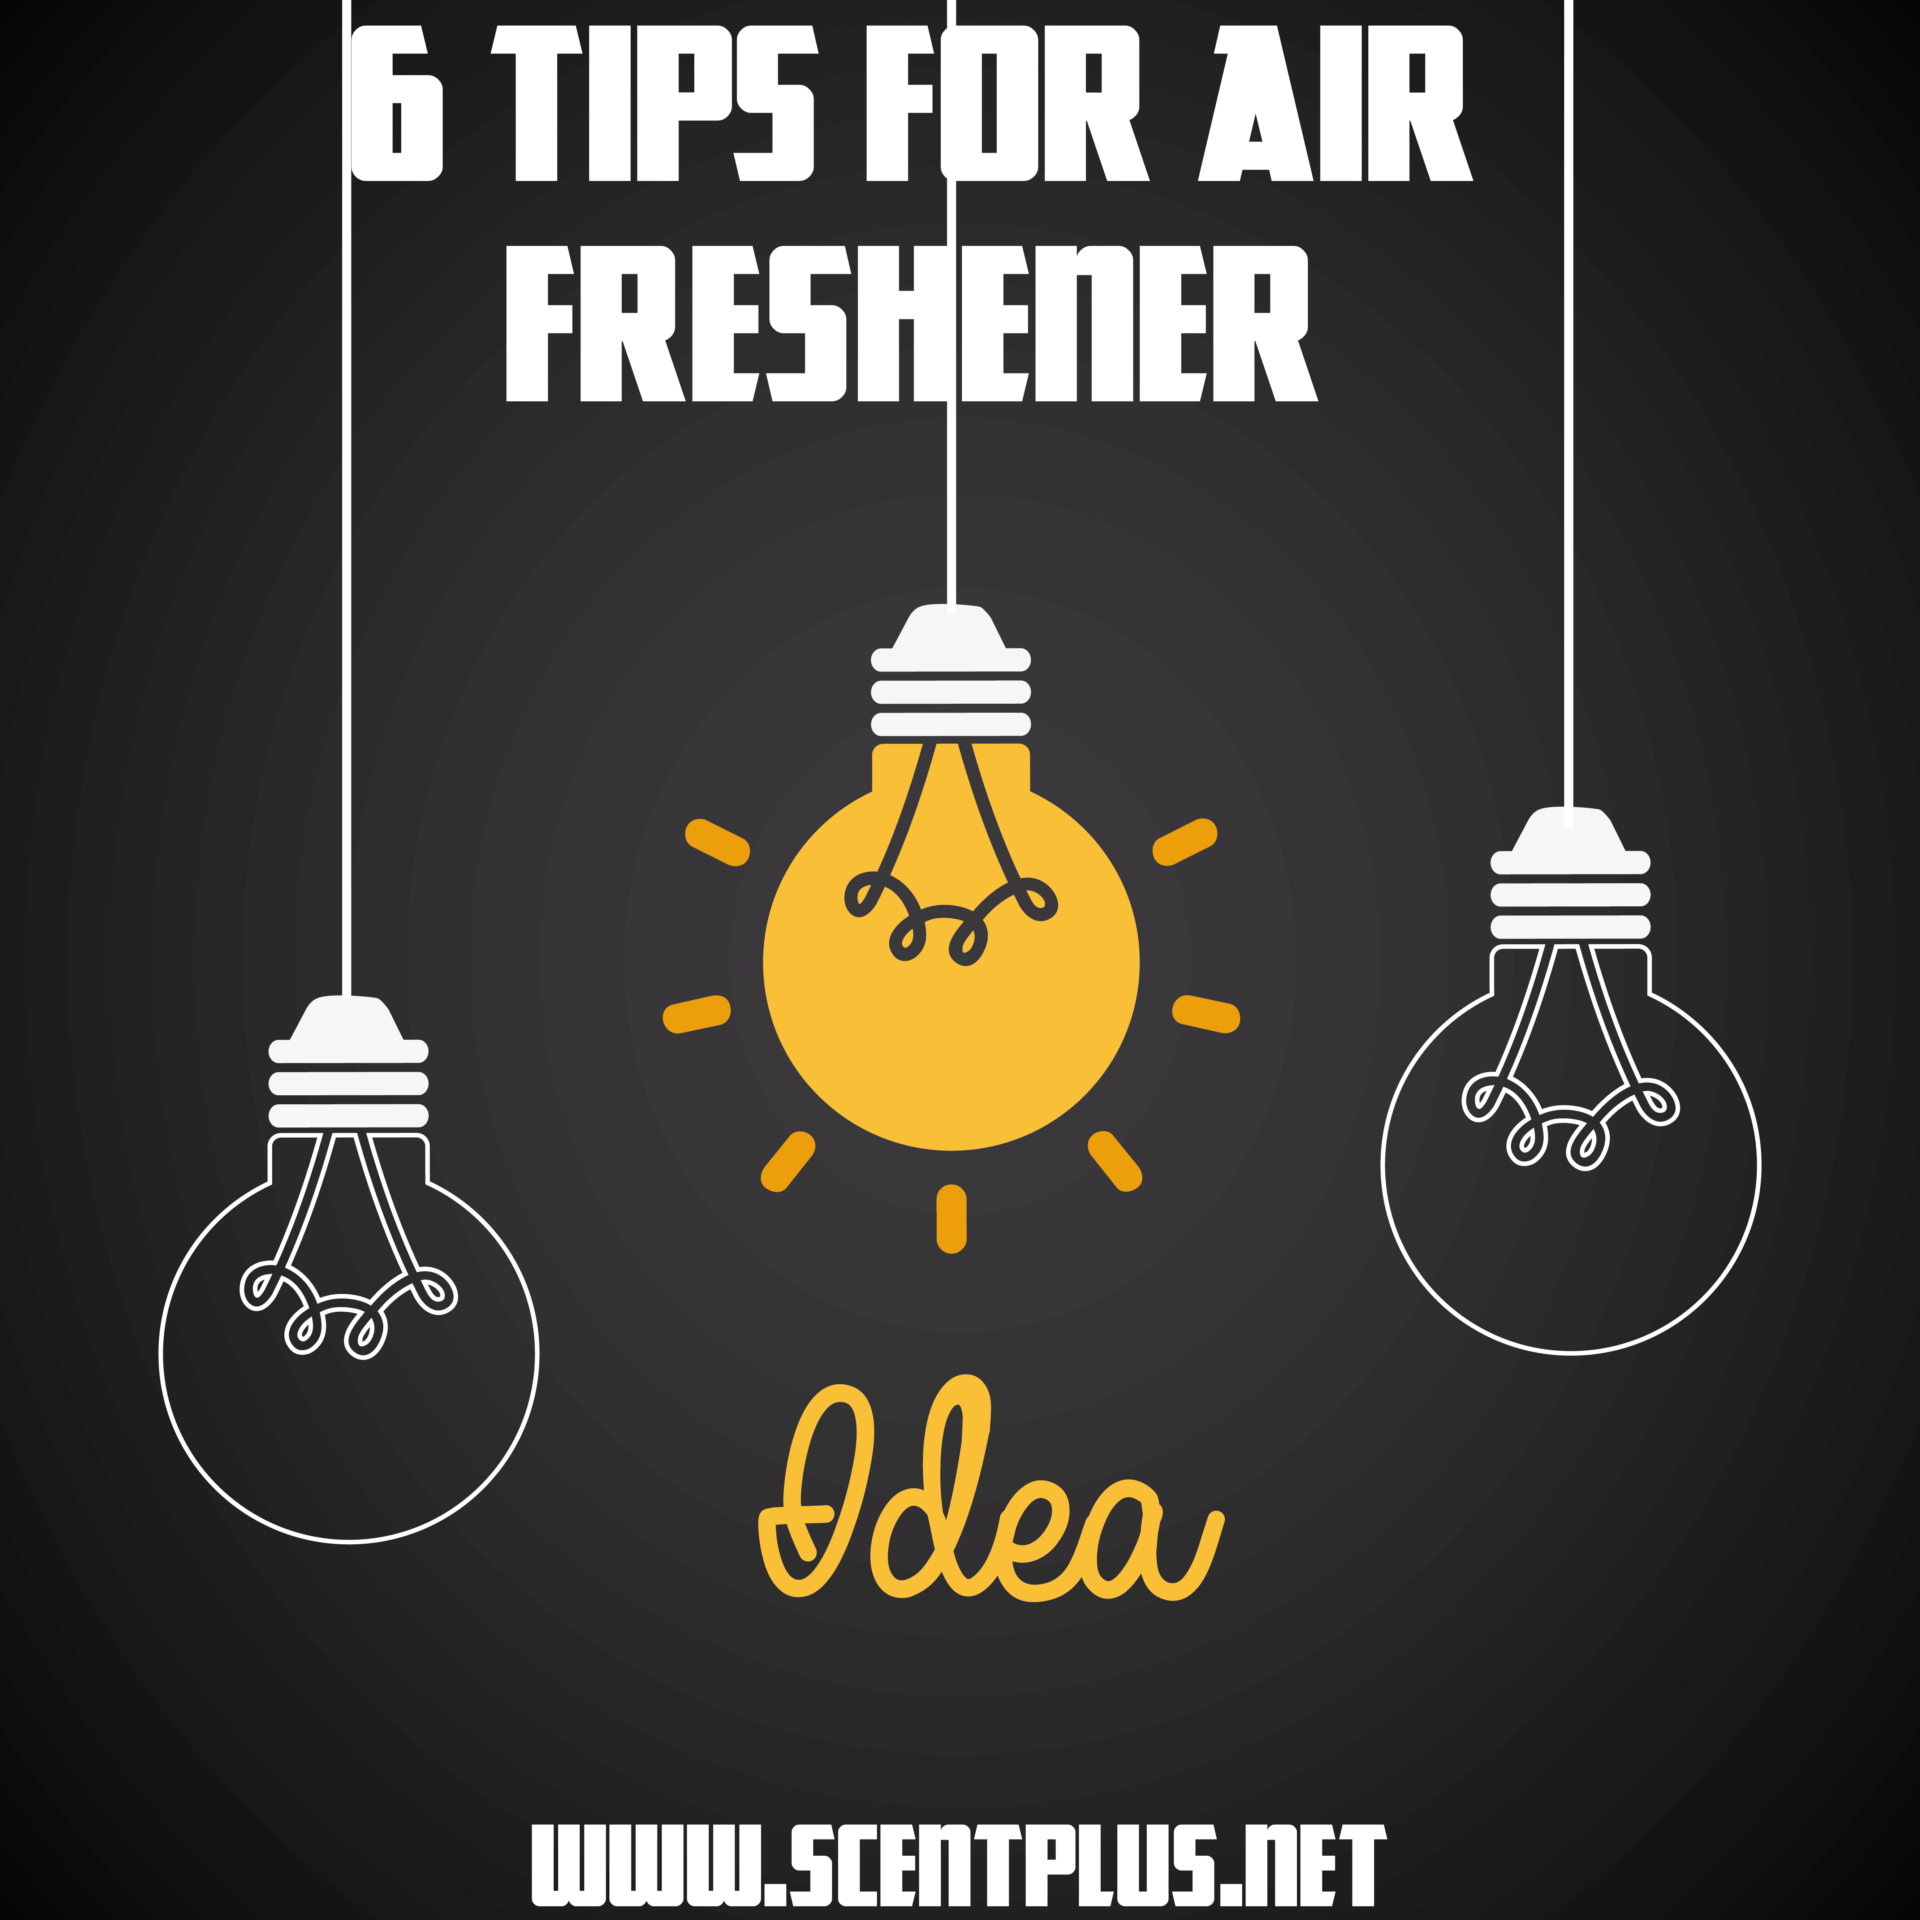 6 TIPS FOR AIR FRESHENER